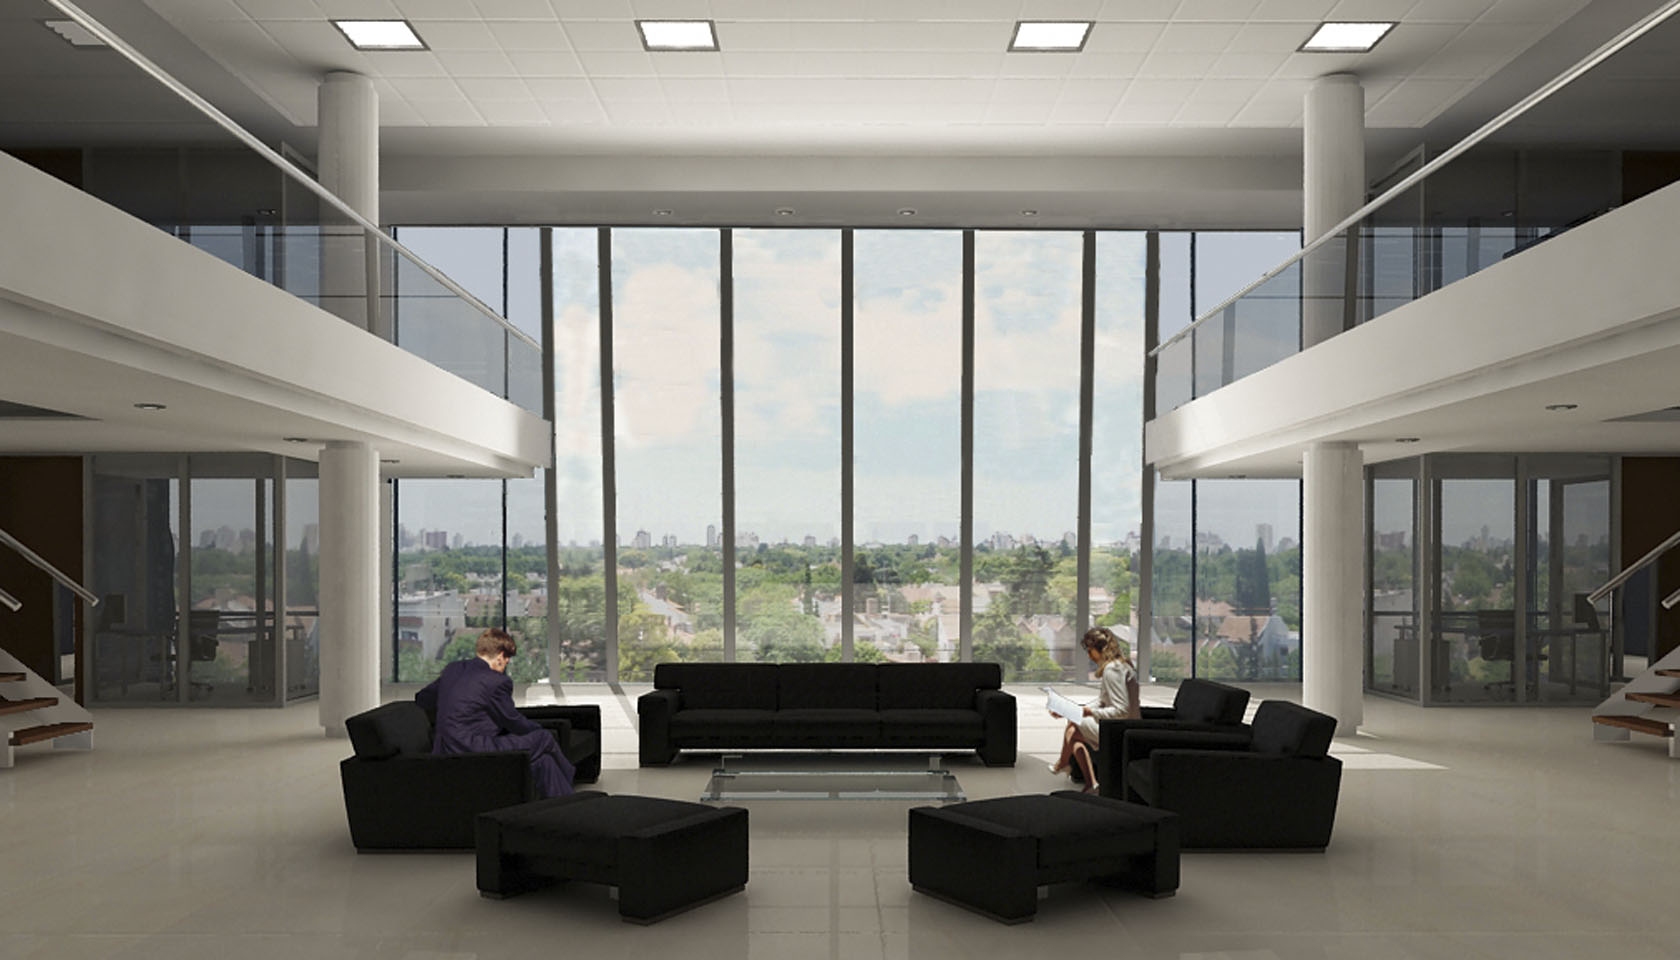 Espacios modernos en edificios de oficinas, ingreso de luz natural en oficinas